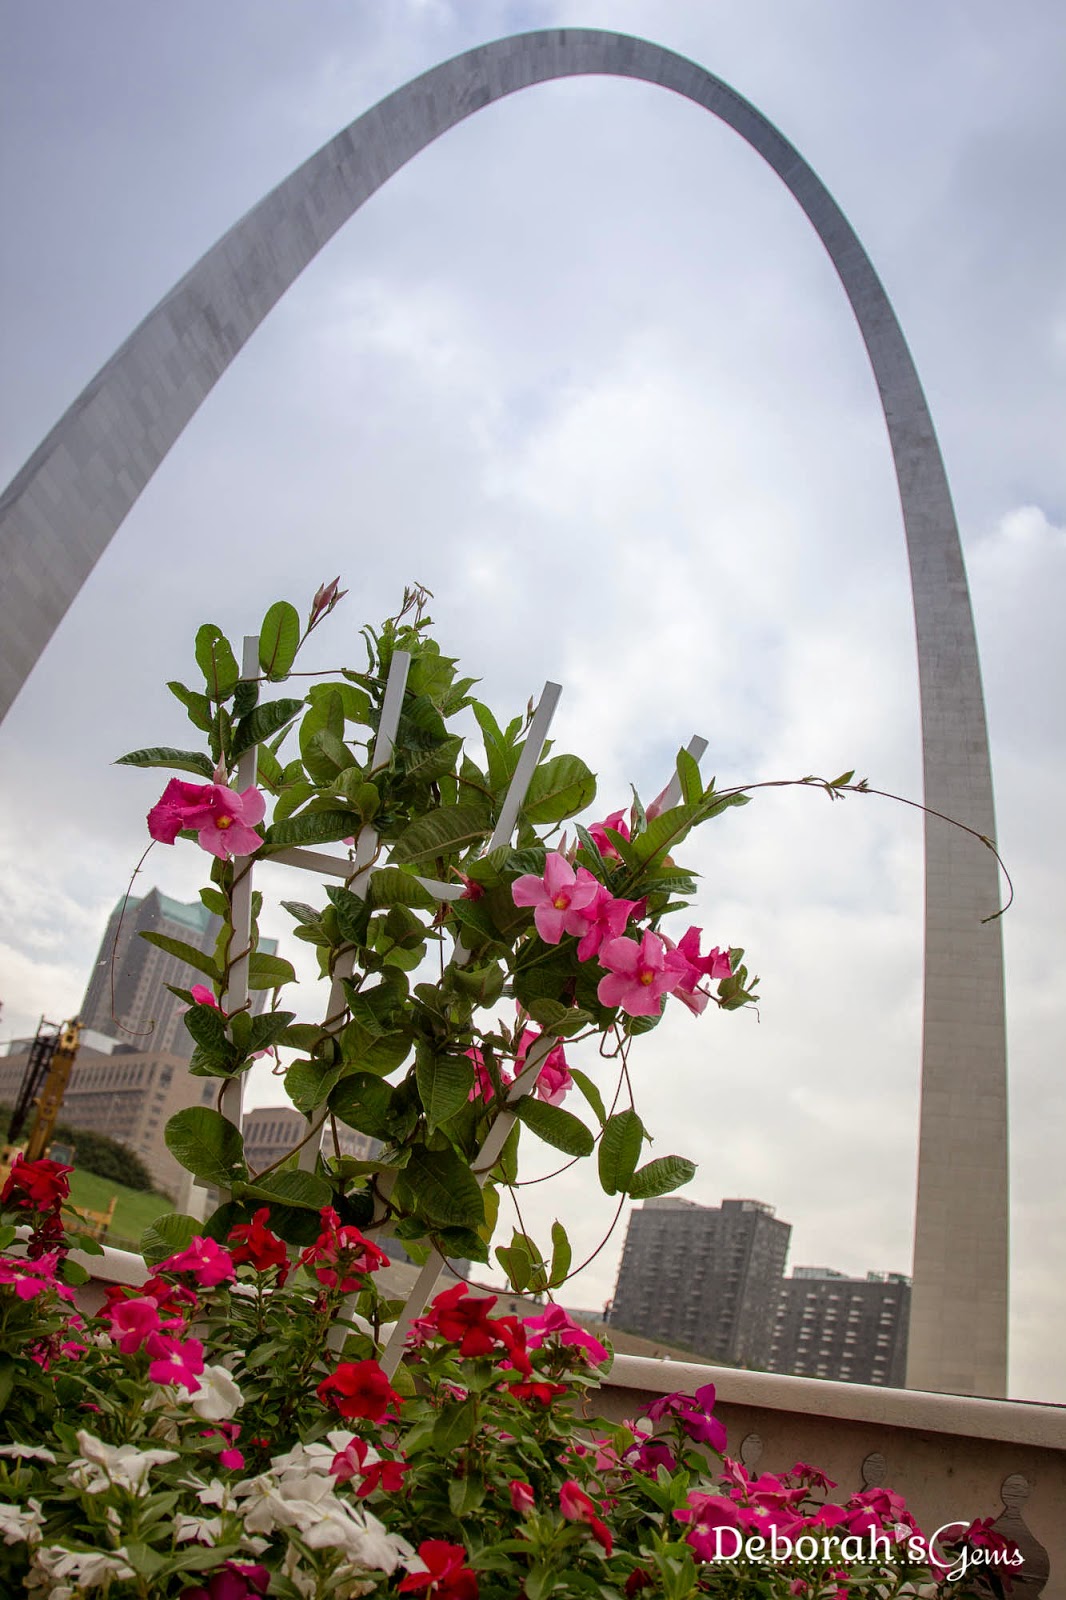 St Louis 2 - photo by Deborah Frings - Deborah's Gems